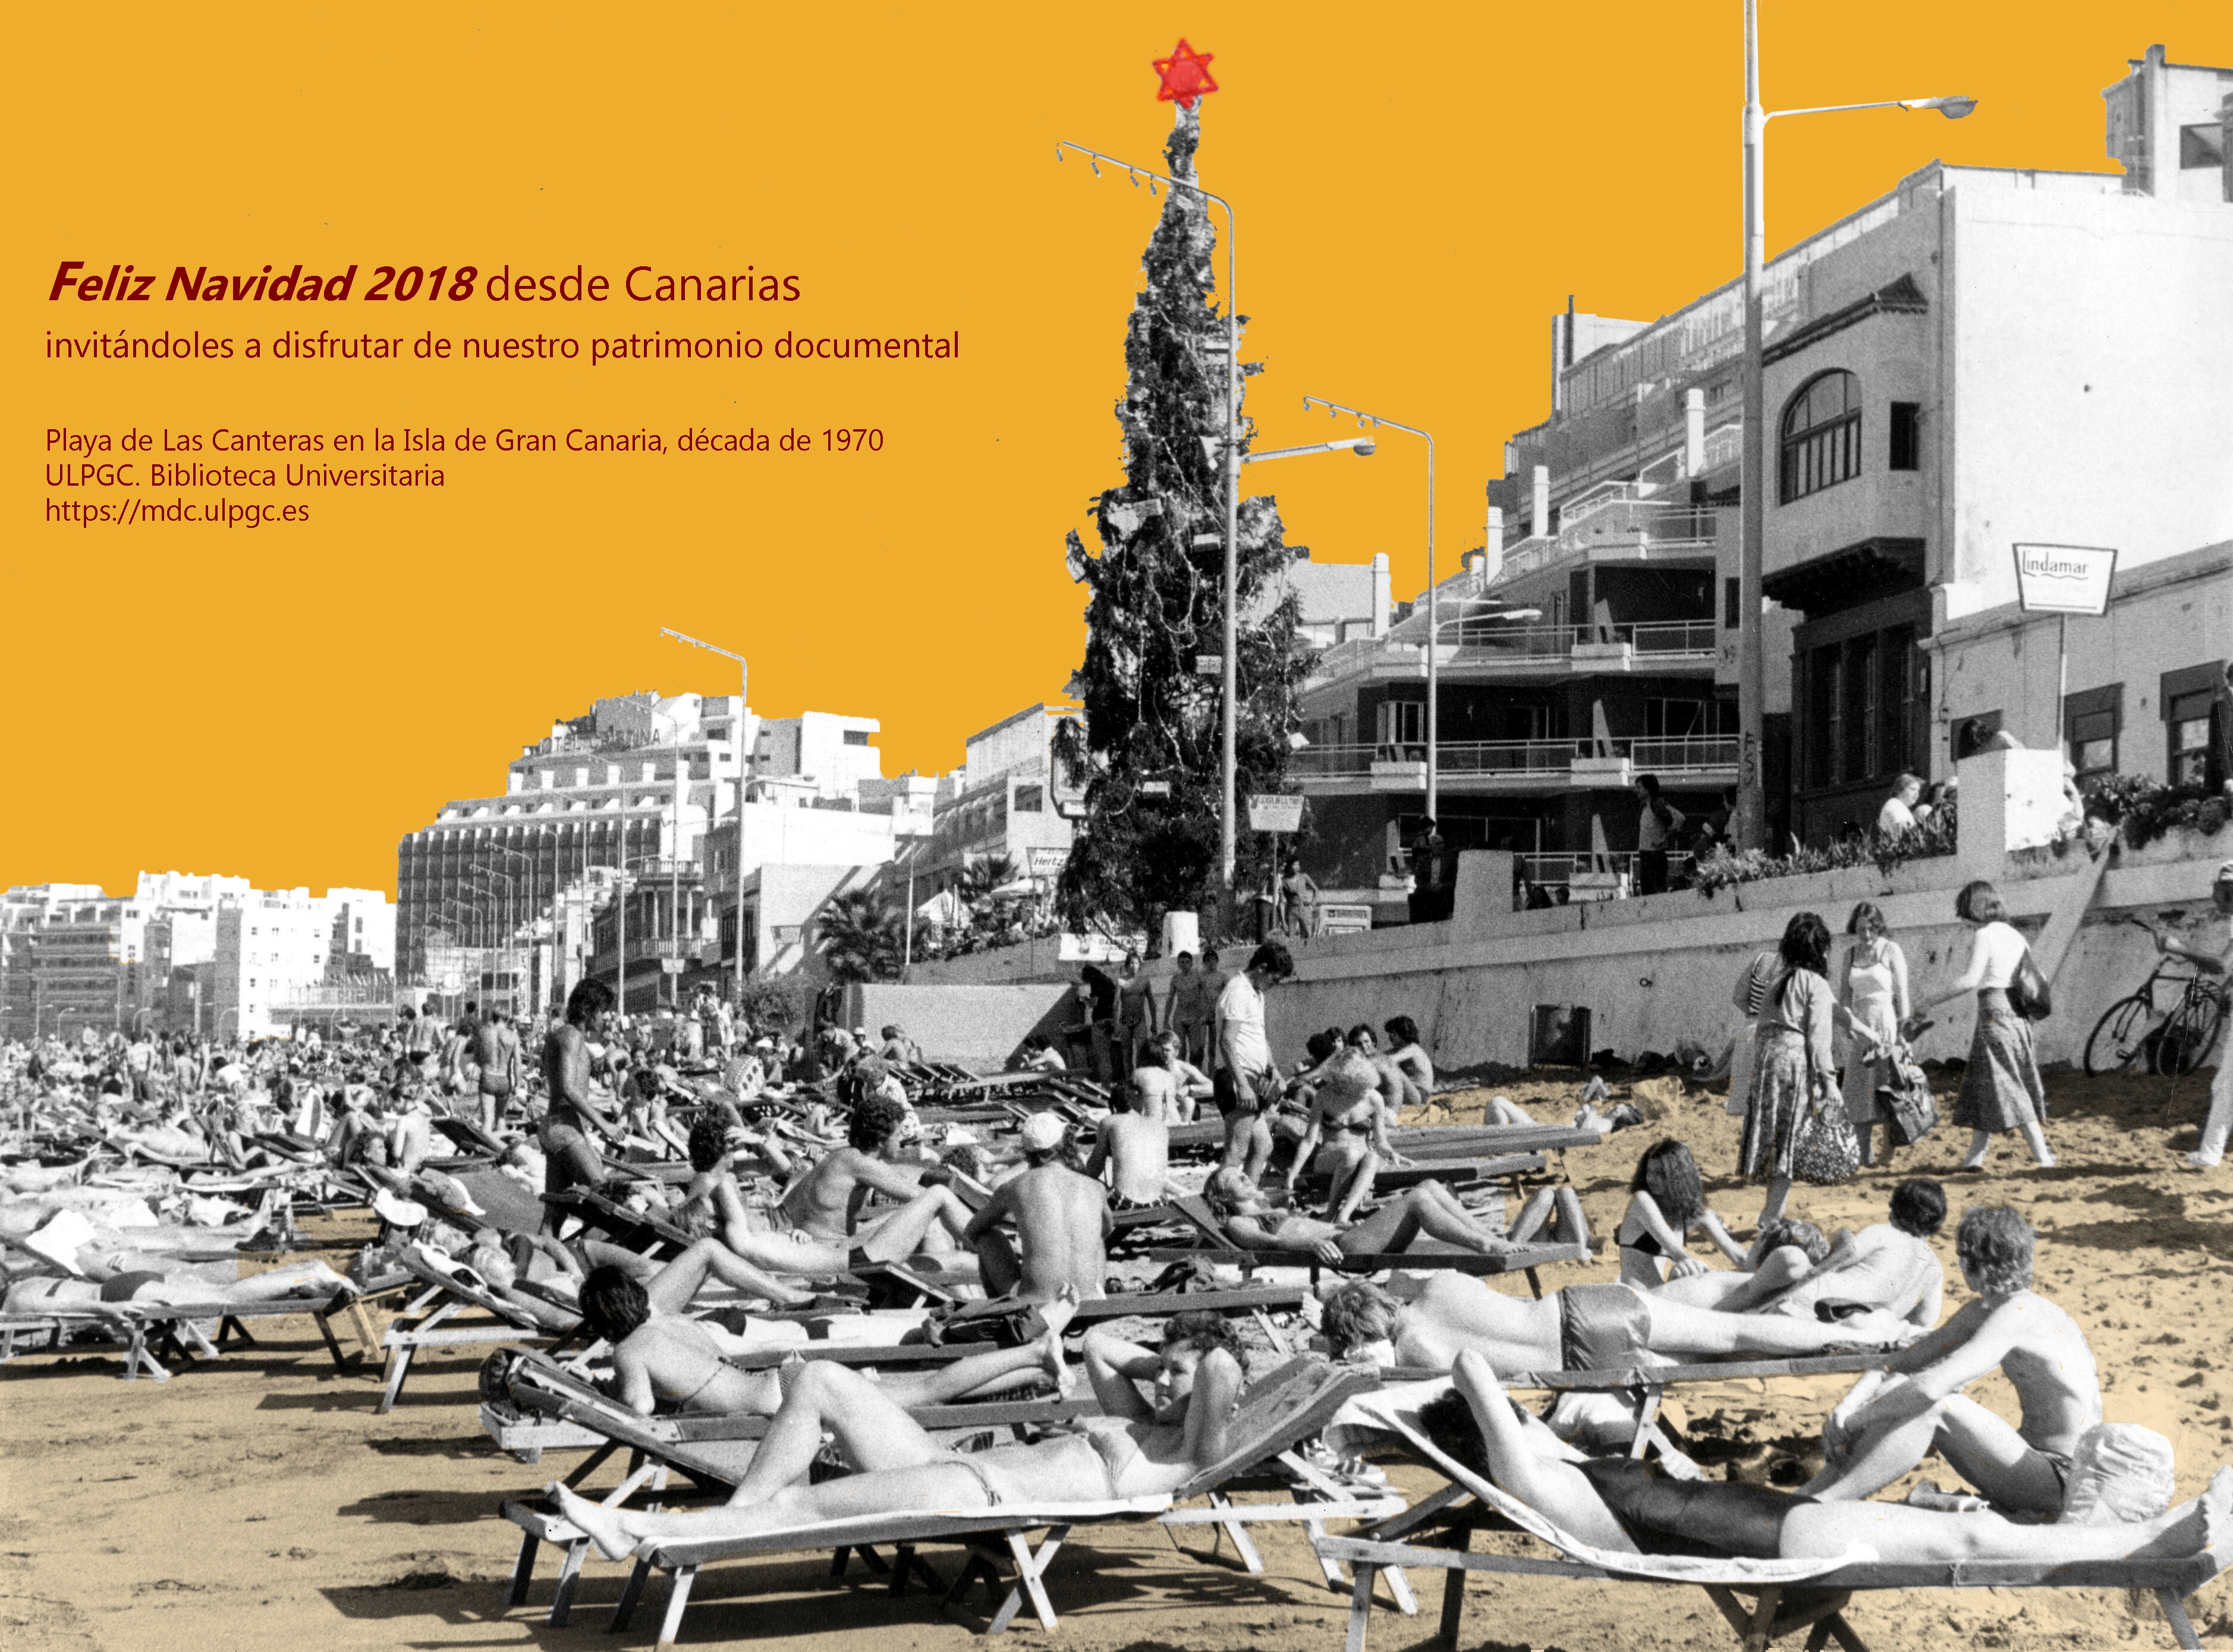 Feliz Navidad 2018 desde Canarias invitándoles a disfrutar de nuestro patrimonio documental. Playa de Las Canteras en la Isla de Gran Canaria, década de 1970. Memoria digital de Canarias (mdC)